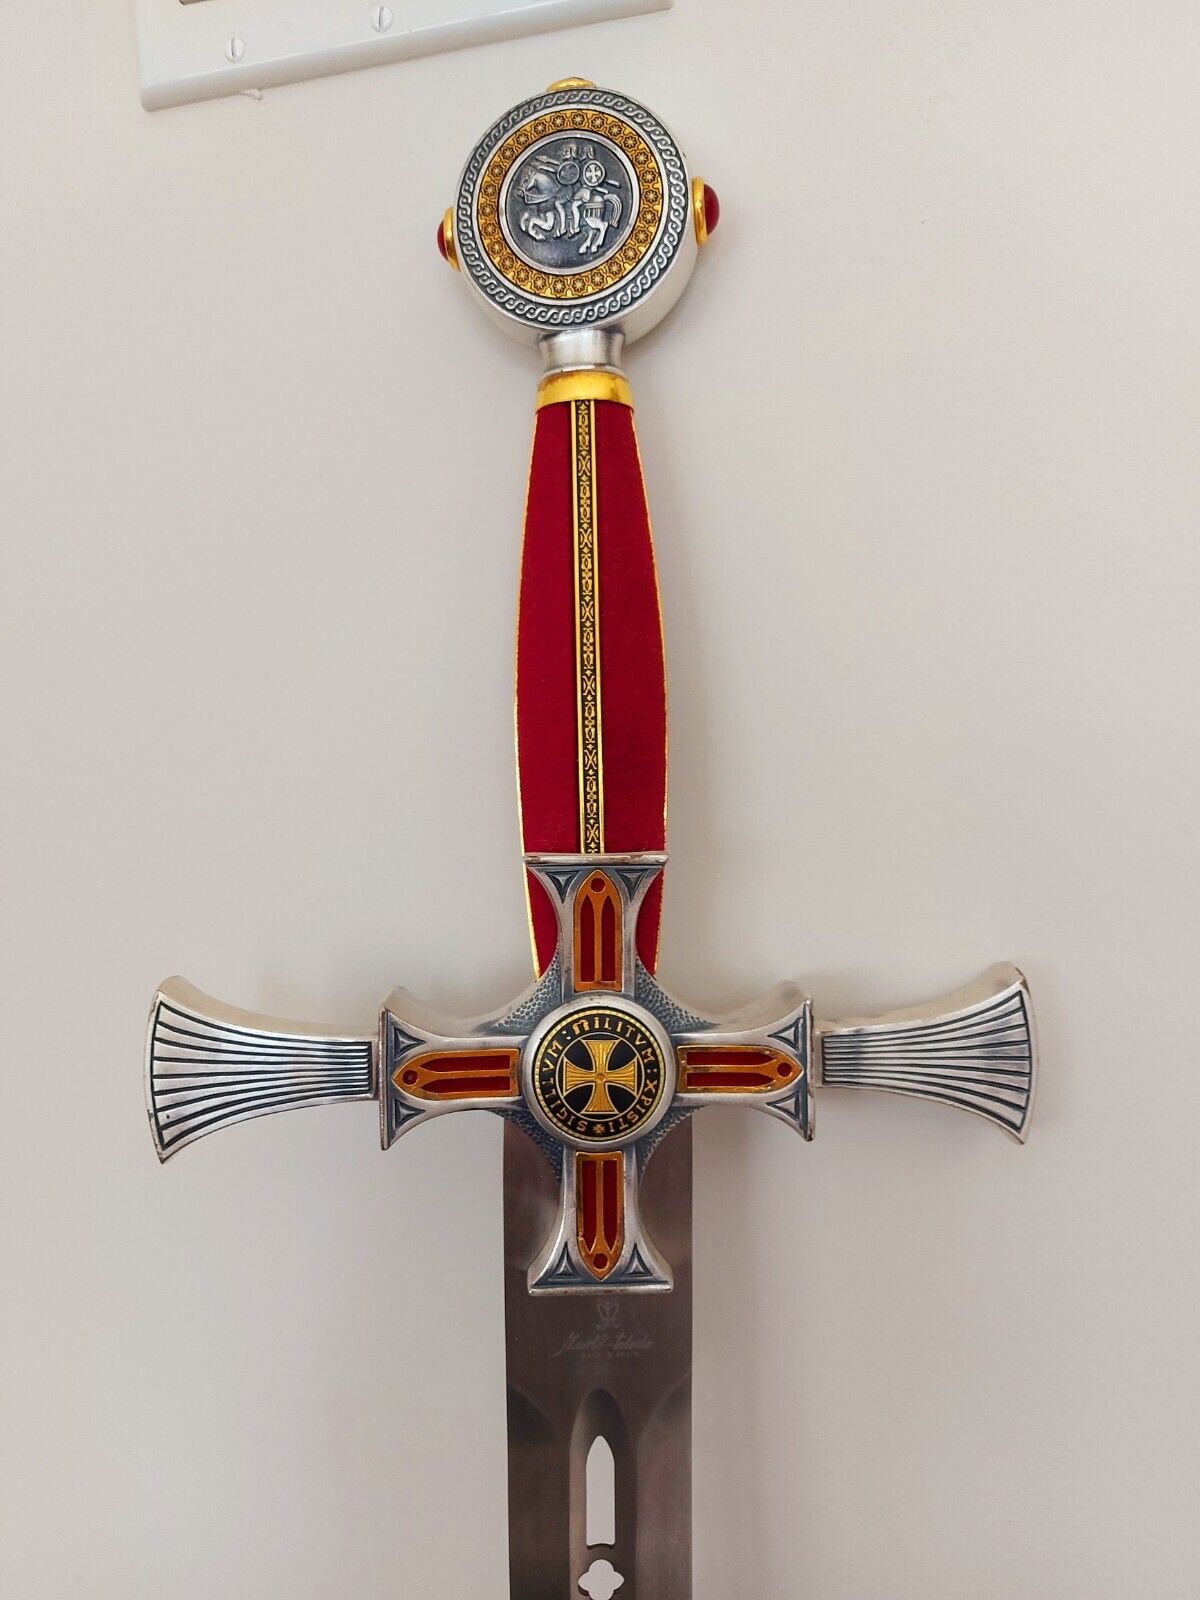 Sword, Knight's Templar